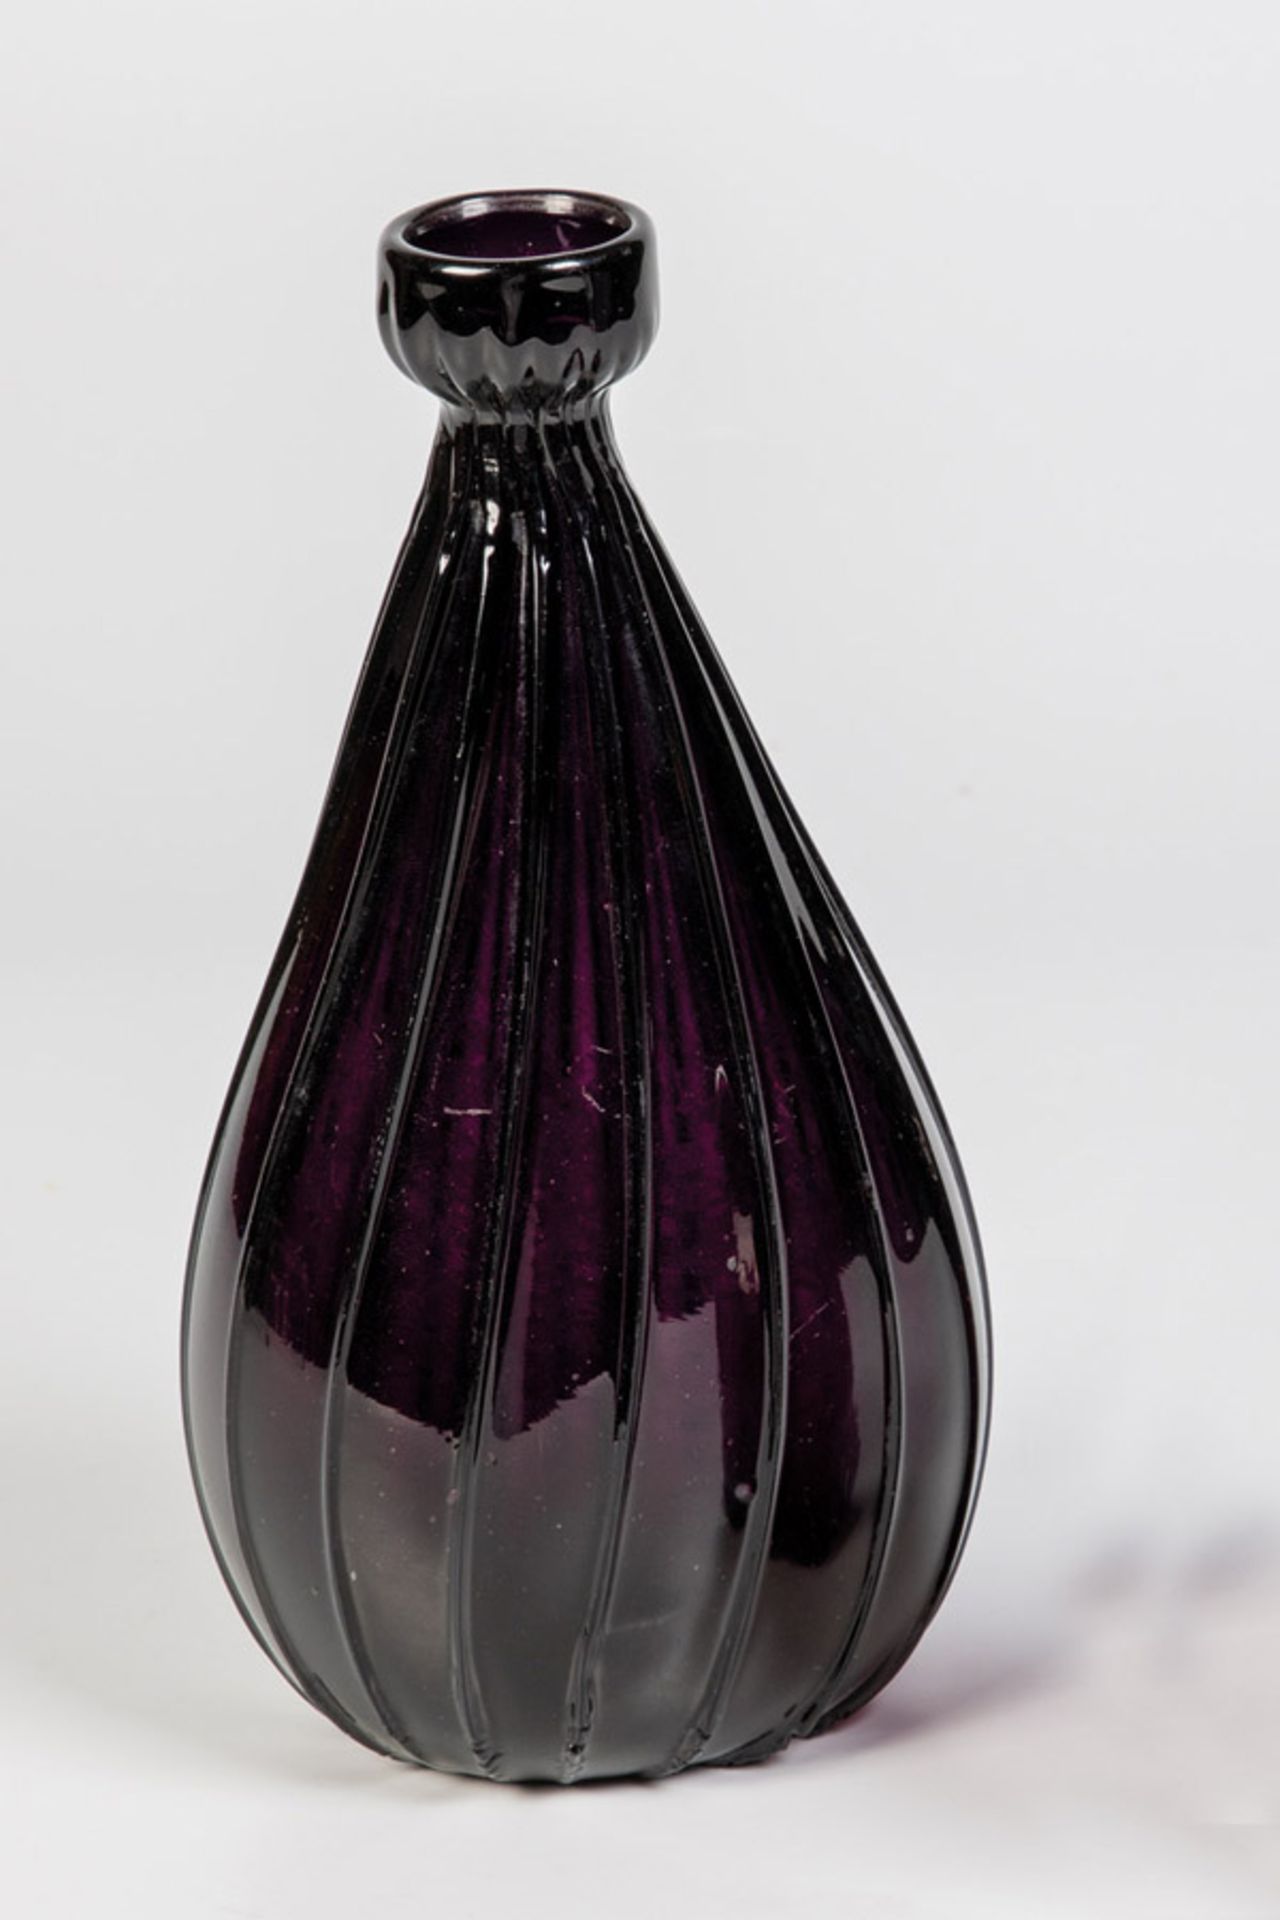 Seltene Tropfenflasche aus violettem GlasAlpenländisch, Tirol oder Schweiz, 17./A. 18. Jh.